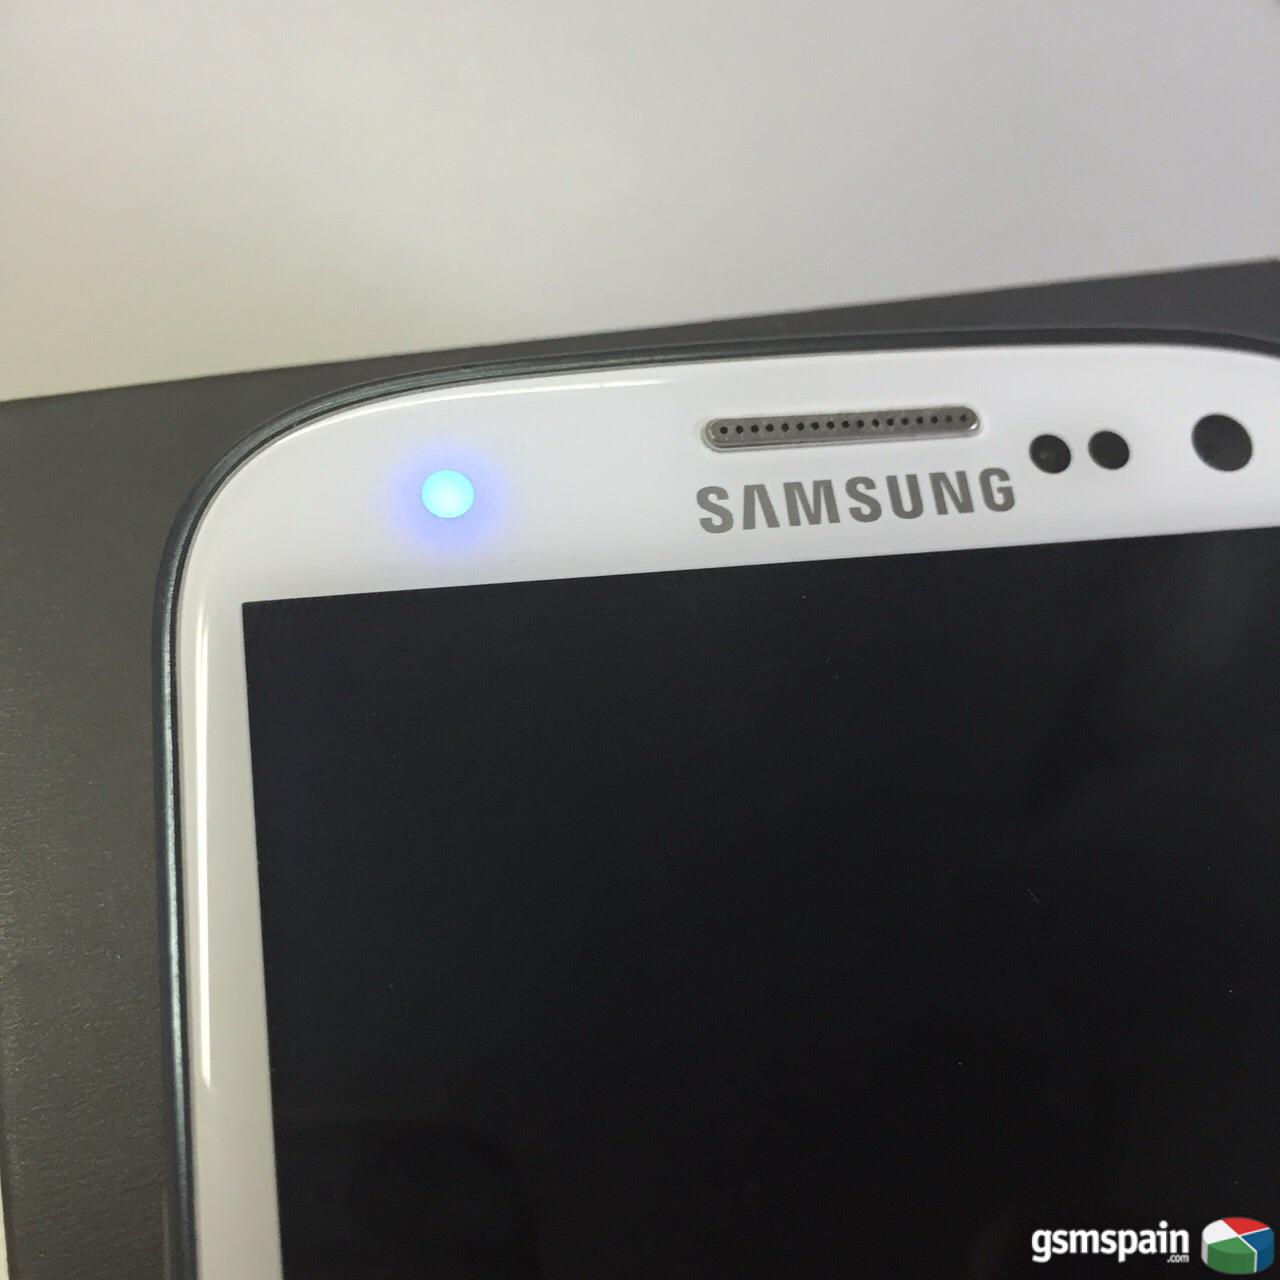 [VENDO] Galaxy S 3 con lcd roto.